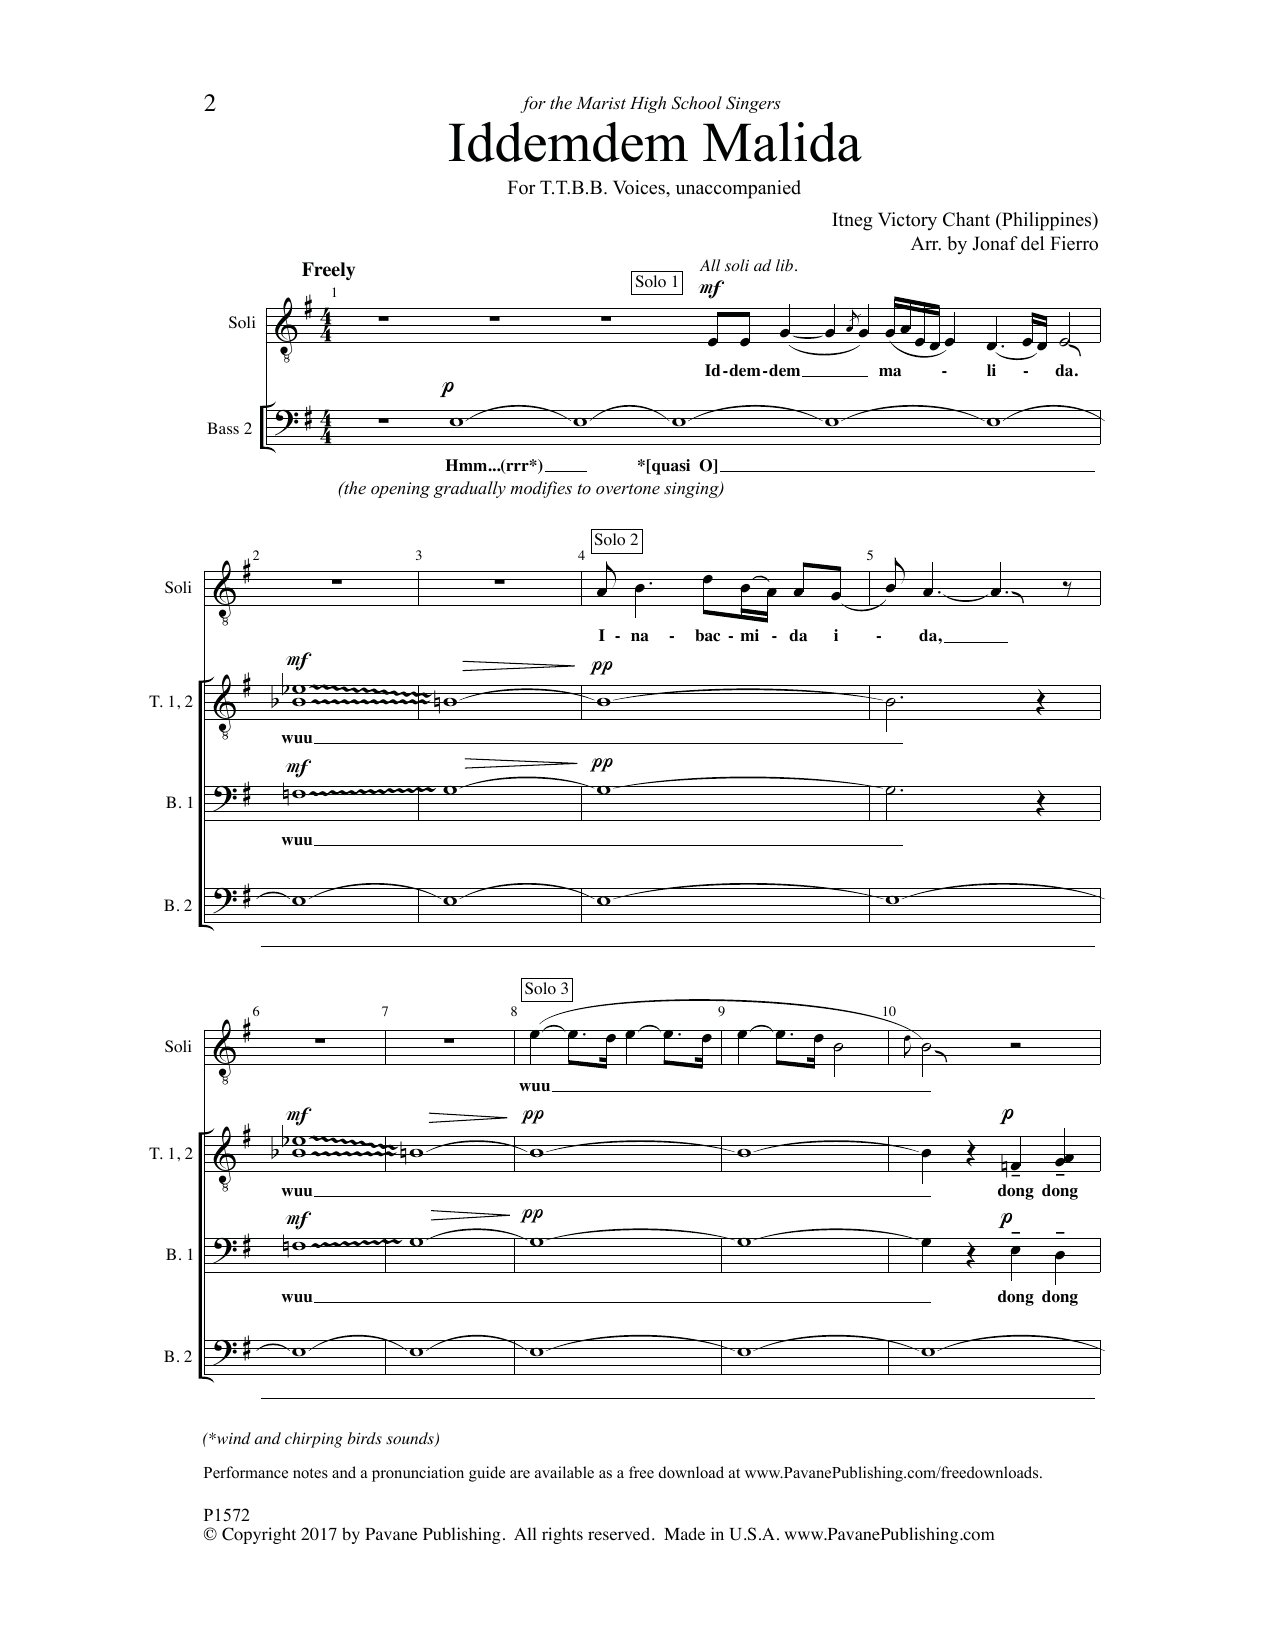 Jonaf del Fierro Iddemdem Malida sheet music notes and chords arranged for SATB Choir